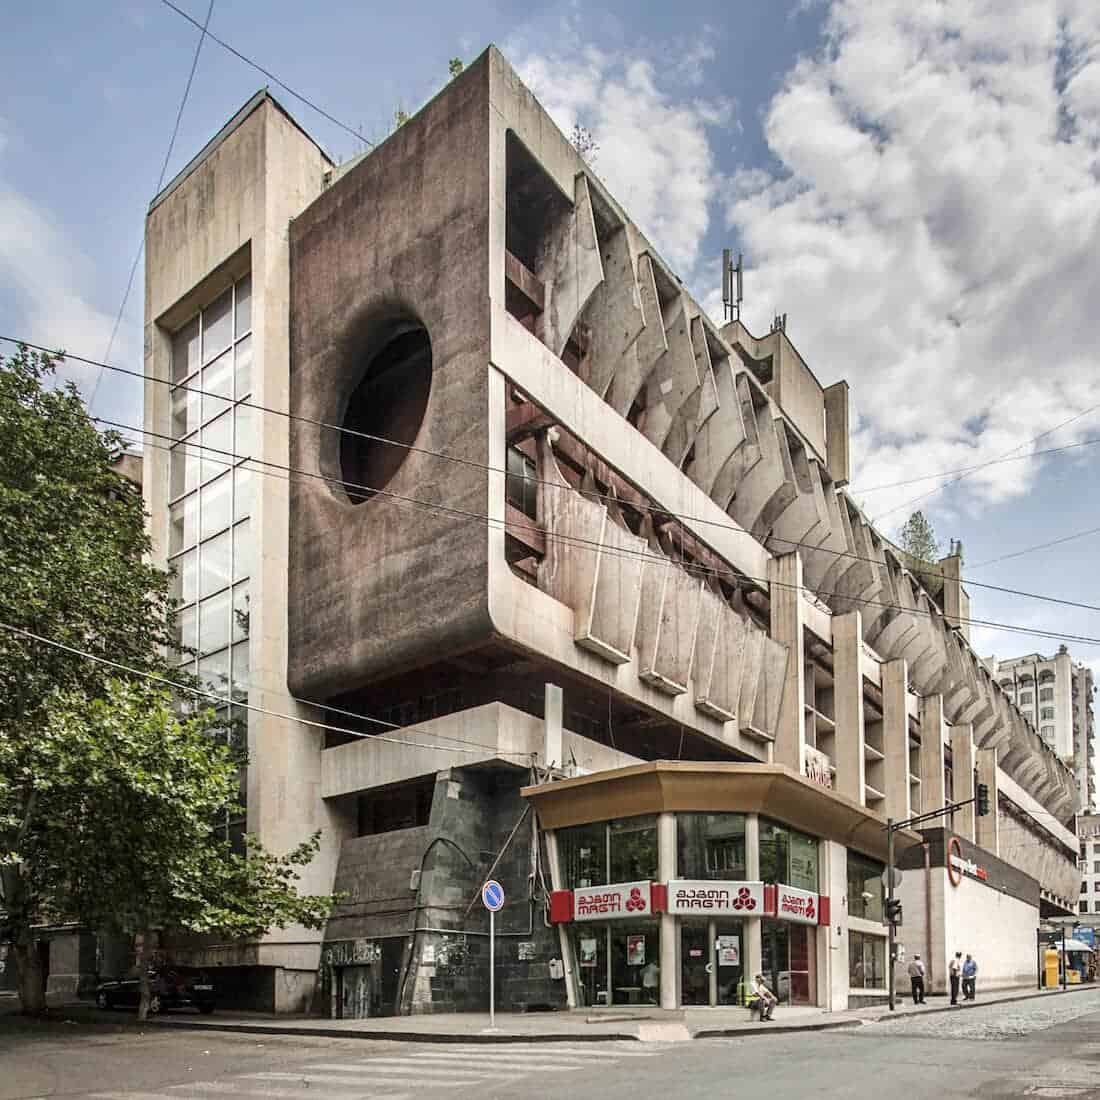 architectuur in Georgië